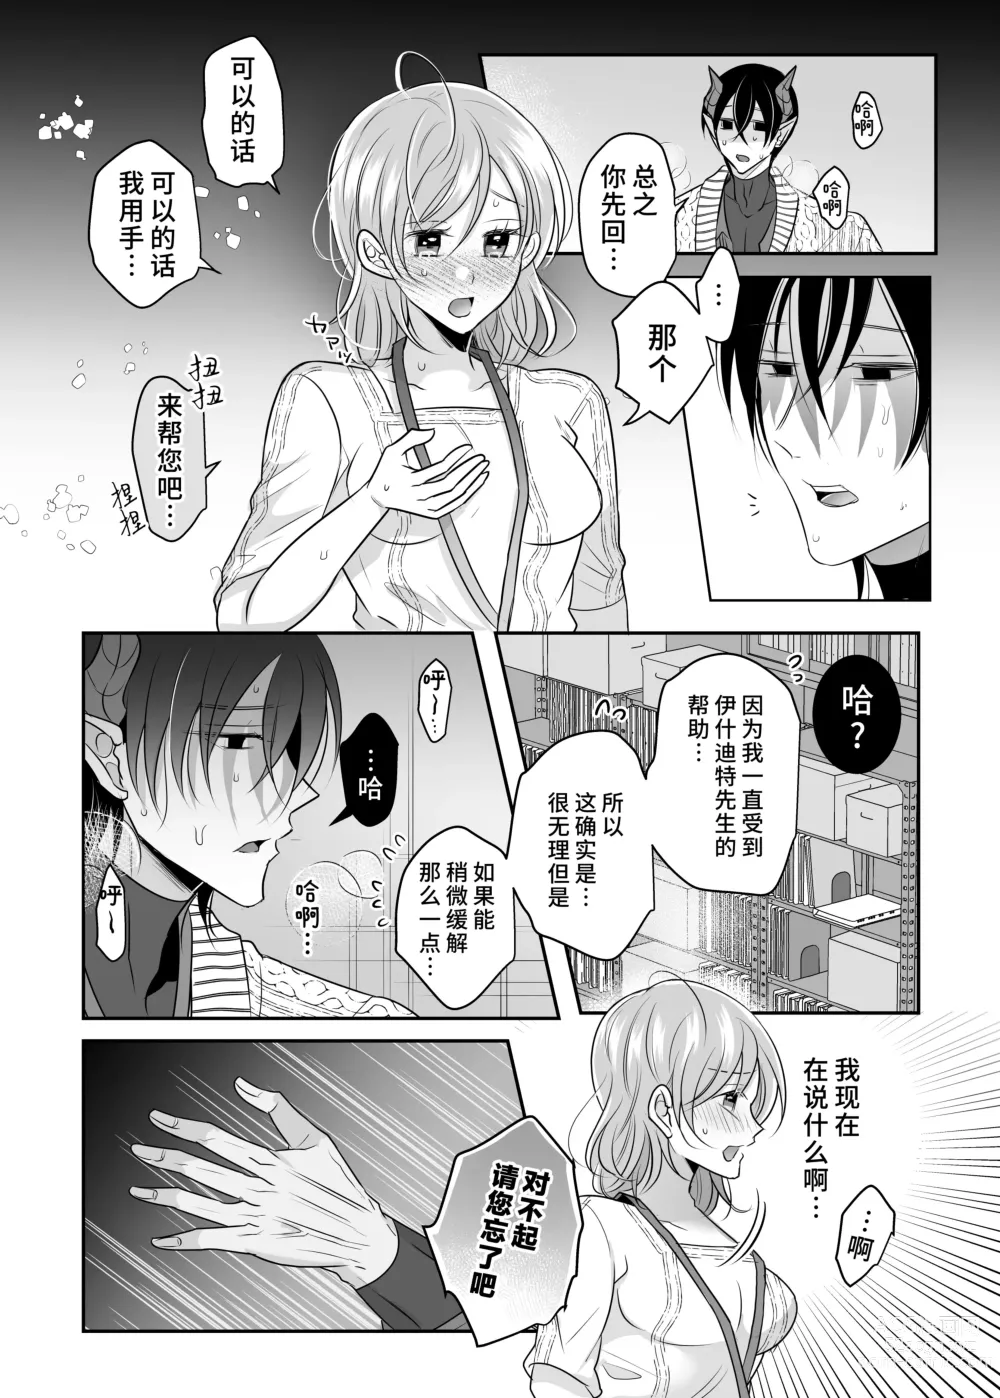 Page 14 of doujinshi 关于我的龙人同事发情期太过骇人这件事